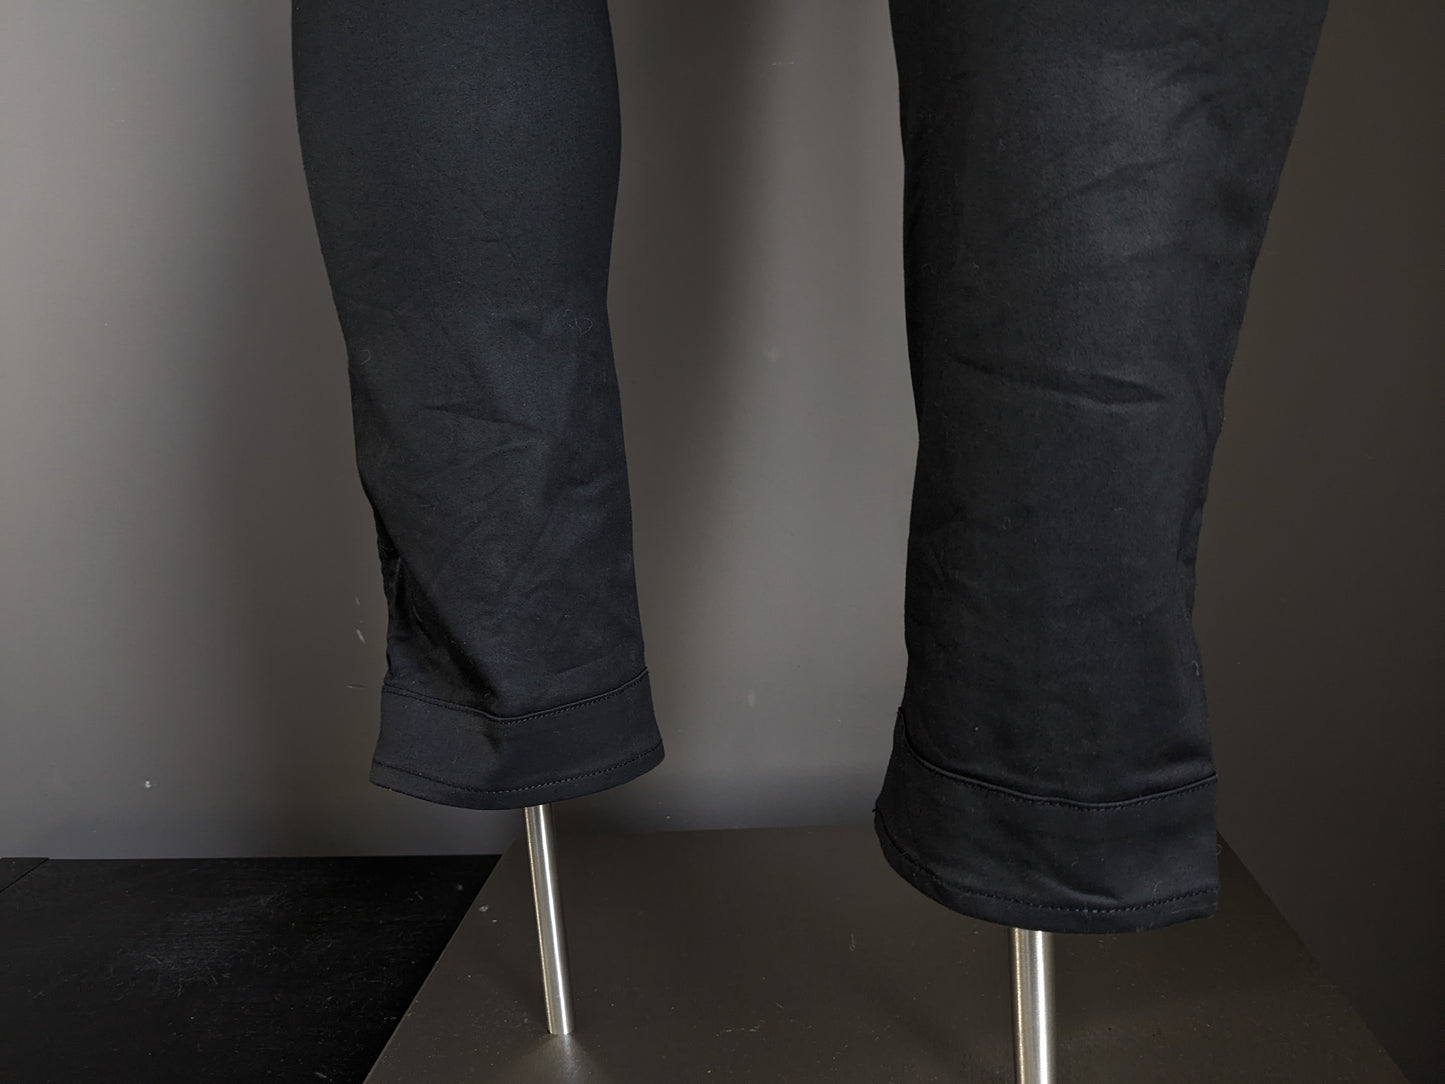 Jeans bruts G-Star. Revêtement noir. Type 5620 Custom. Taille W29 - L32. Extensible.